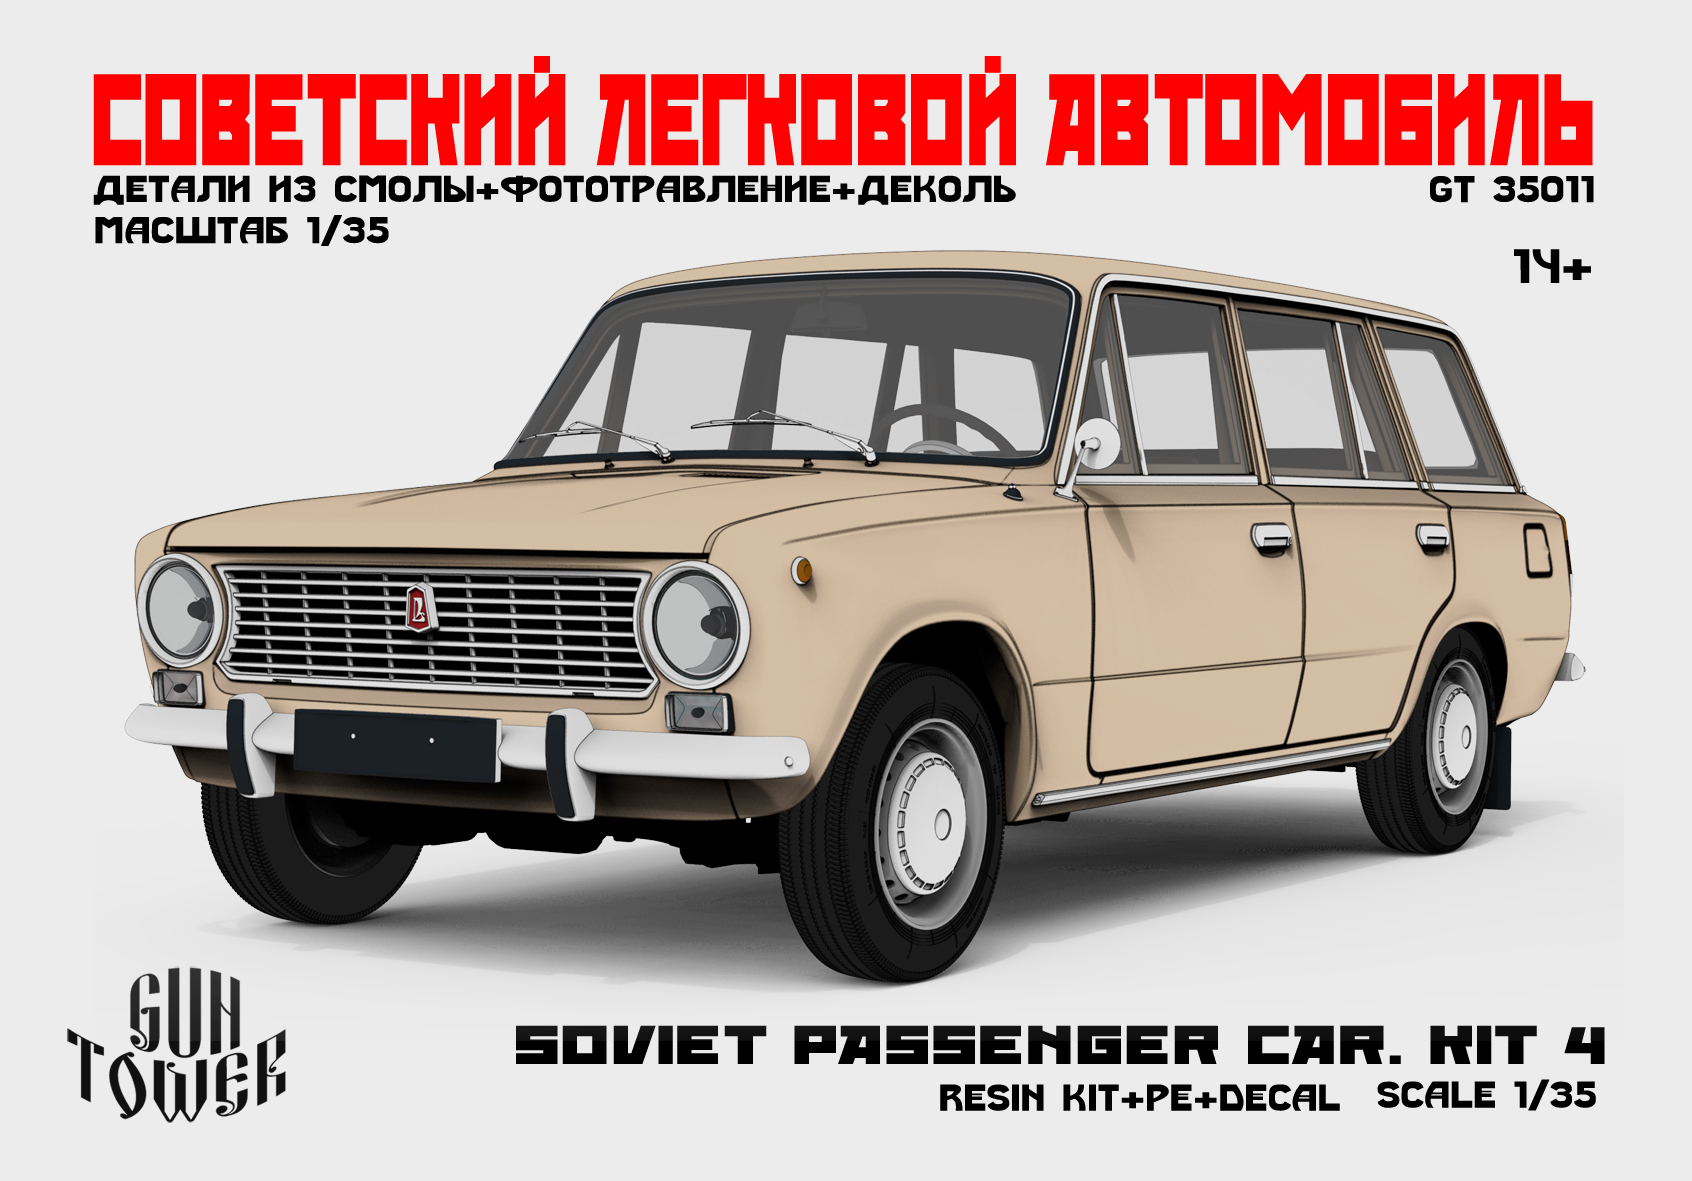 Soviet passenger car.Kit 4 (2102)